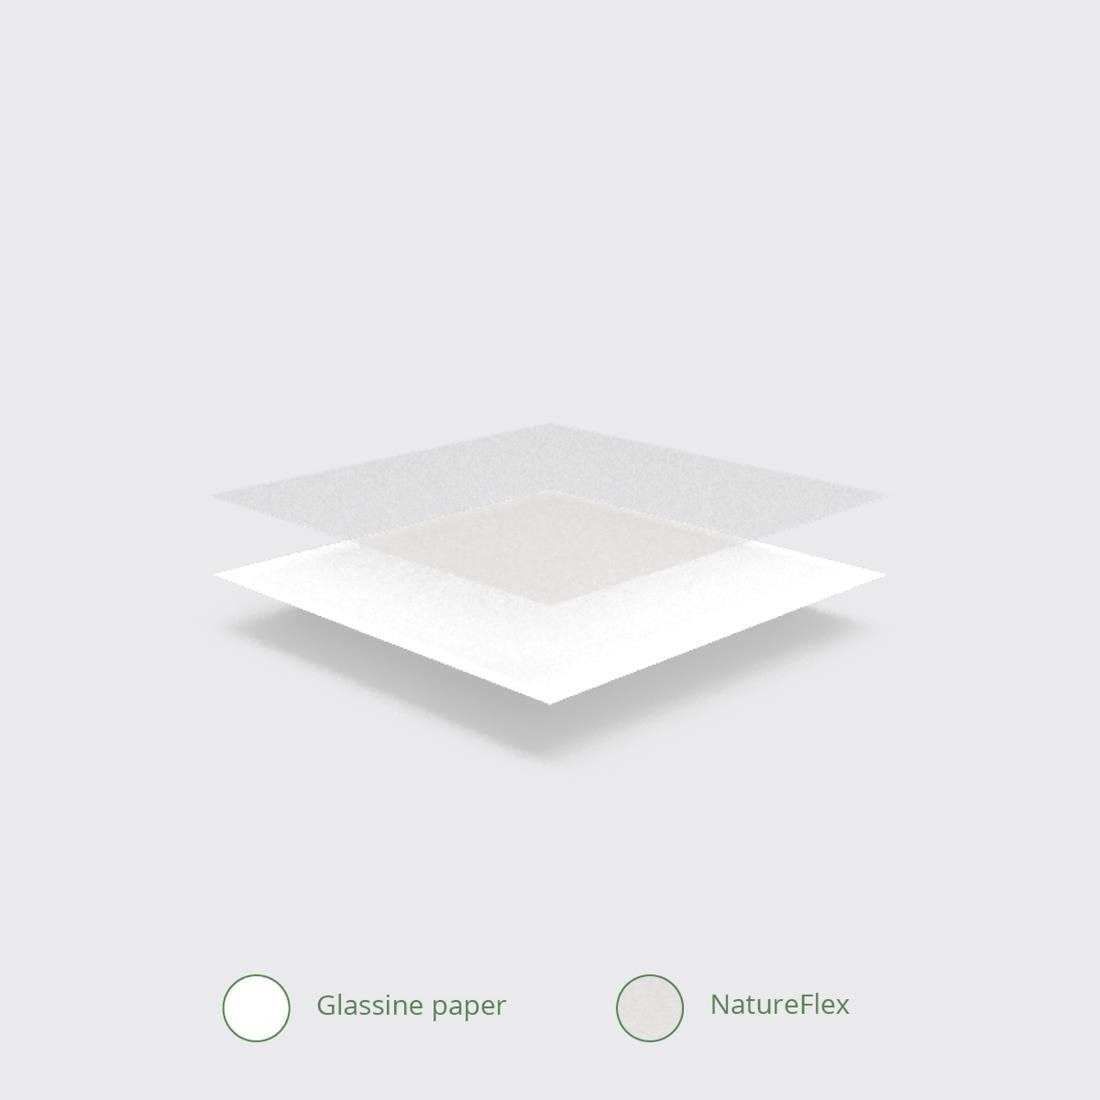 Sacs en papier glassine compostables avec fenêtre de visualisation | 500 pièces